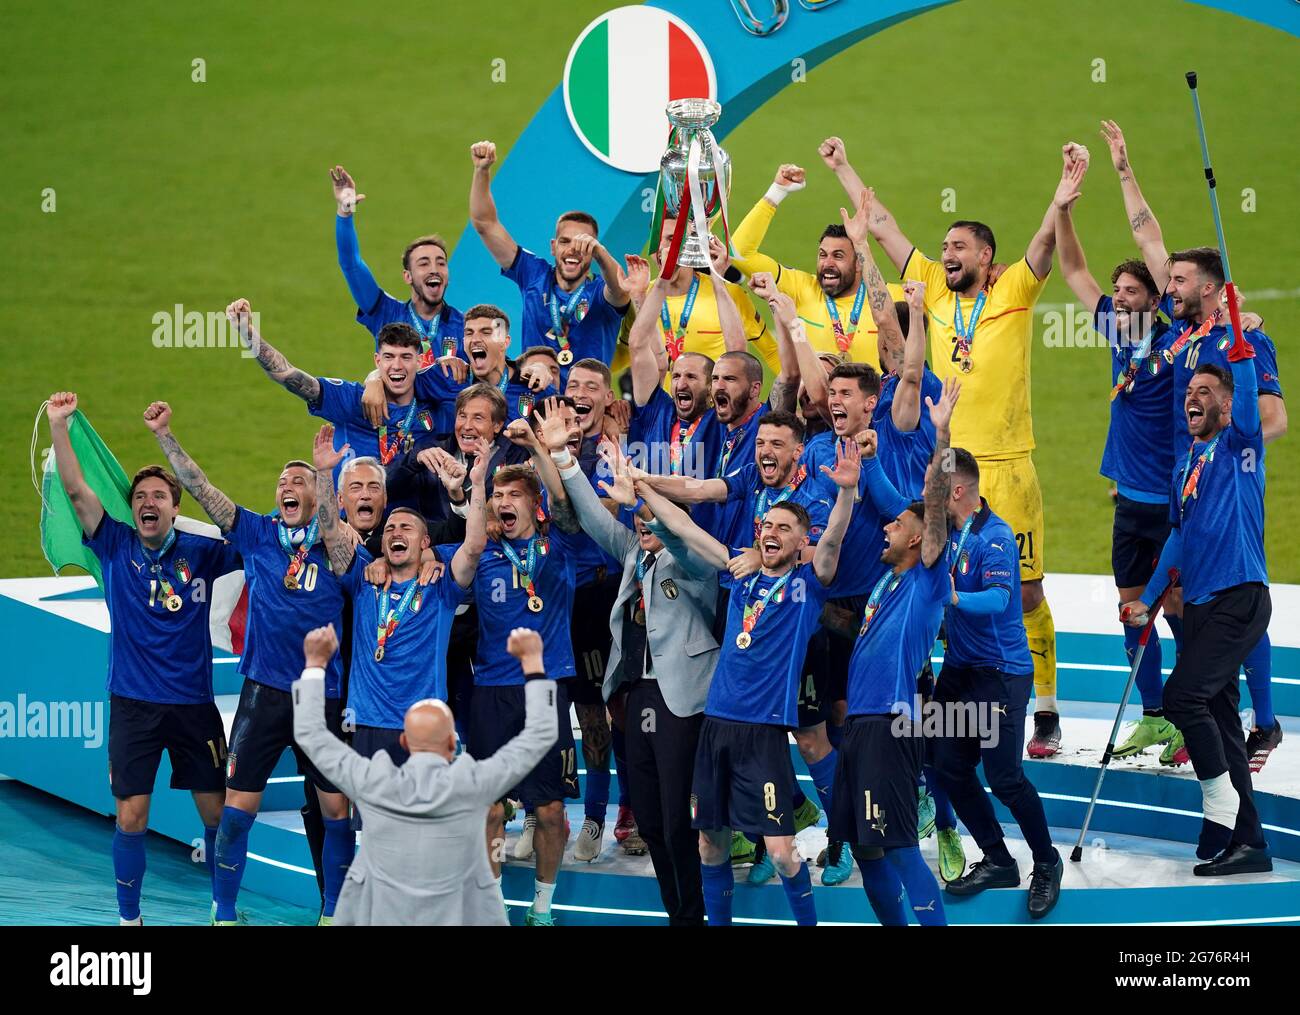 Italia El capitán Giorgio Chiellini levanta el trofeo de la UEFA EURO 2020 tras la victoria de sus lados sobre Inglaterra en la final de la UEFA Euro2020 en el estadio de Wembley, Londres. Fecha de la foto: Domingo 11 de julio de 2021. Foto de stock